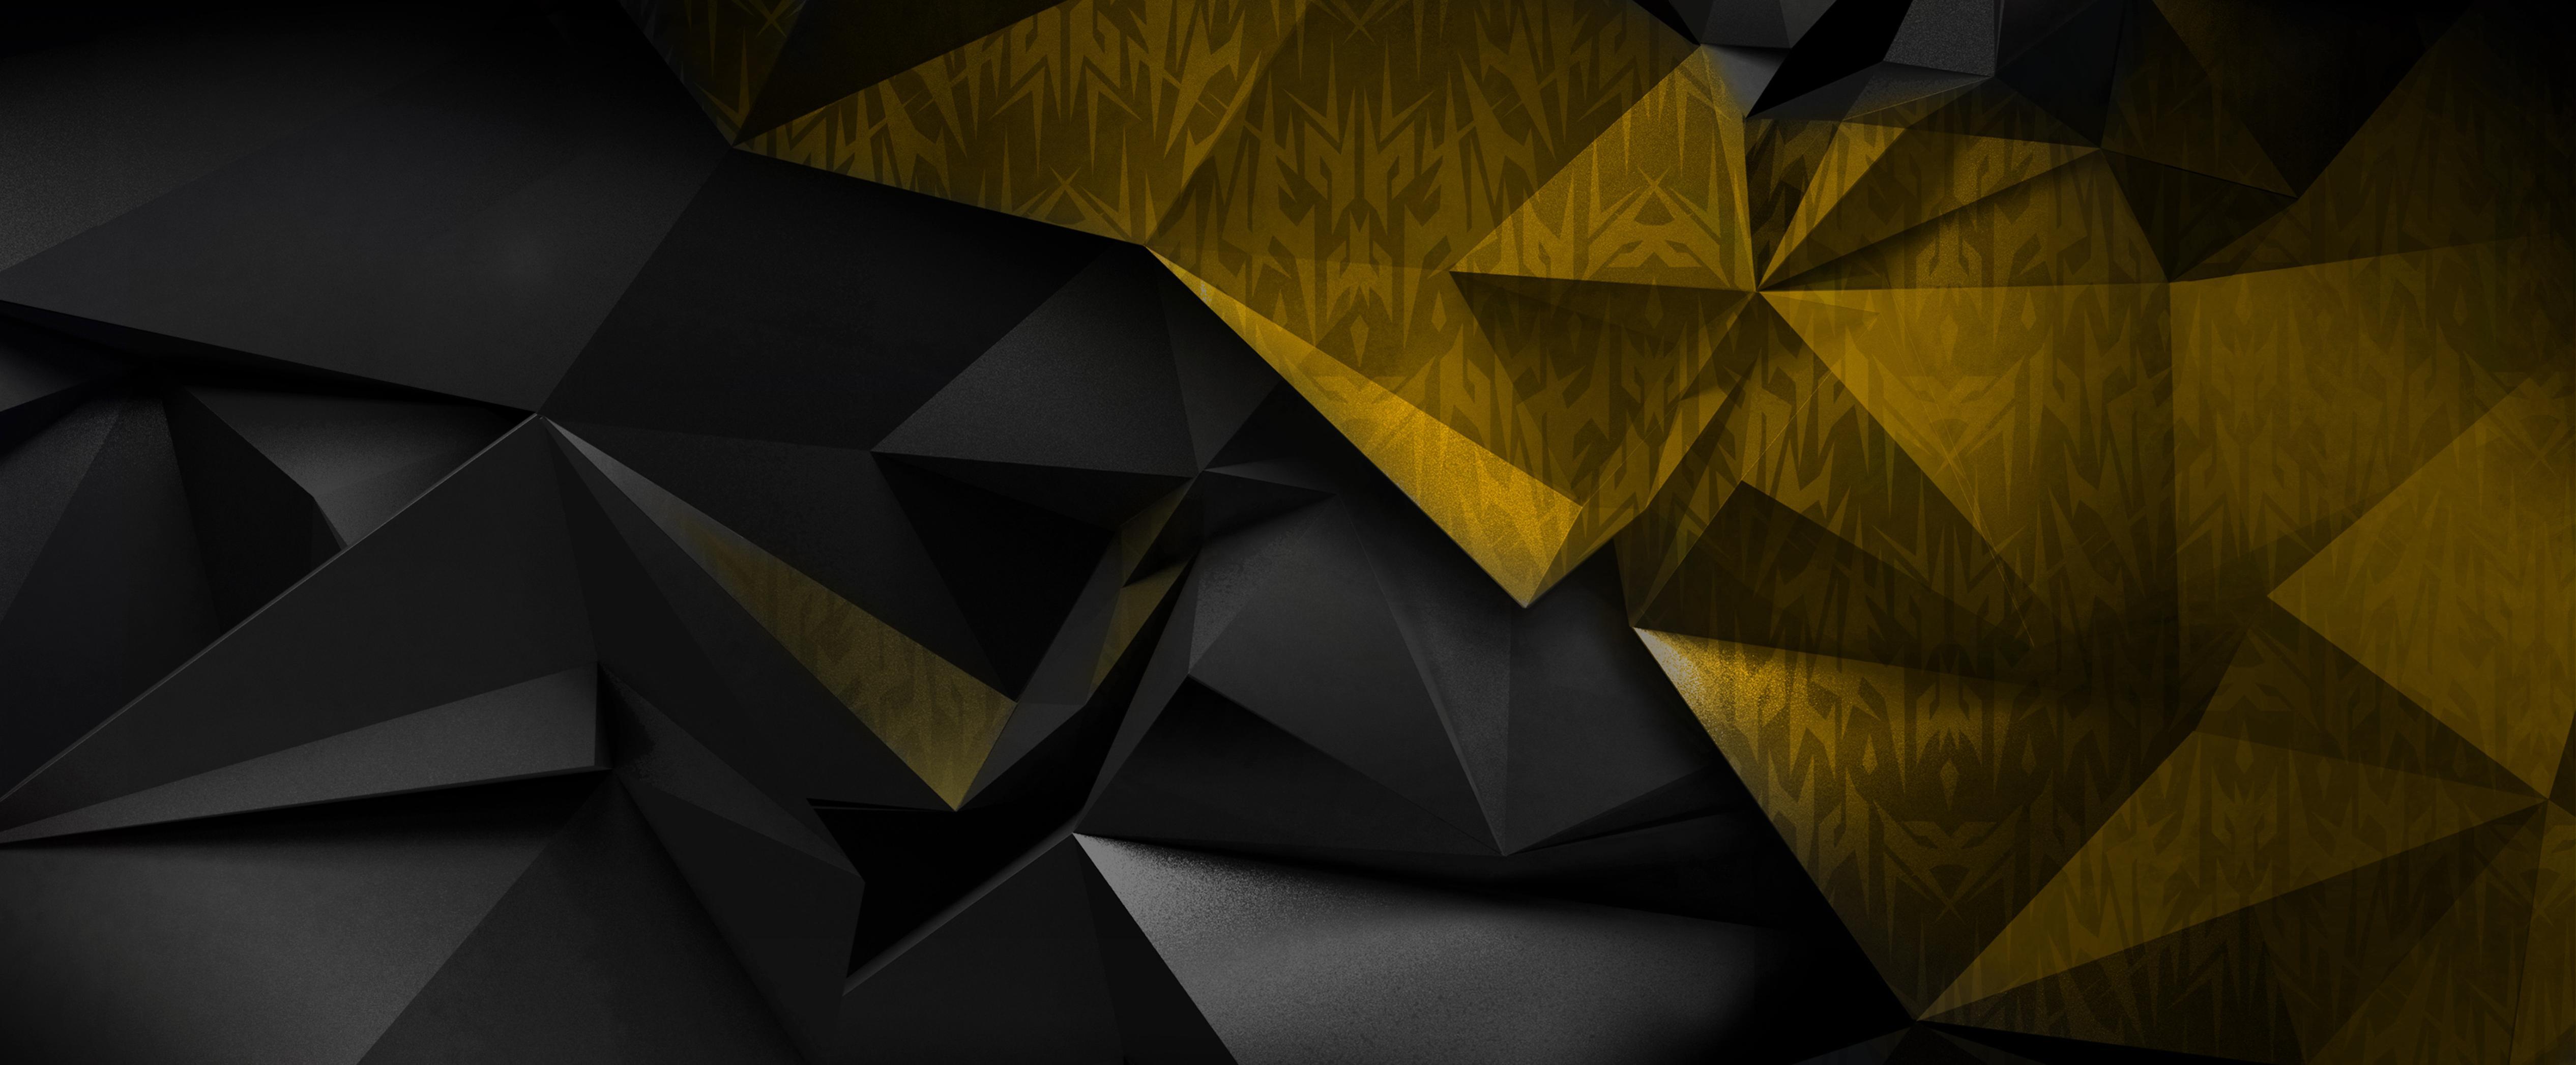 Mang đến cho bạn sự sang trọng và đẳng cấp với hình nền đen và vàng. Sự phối hợp độc đáo giữa màu đen với màu vàng sẽ tạo ra bầu không khí hoàn toàn mới lạ. Thưởng thức sự nổi bật và đặc biệt của hình nền đen và vàng với thiết kế sáng tạo này.